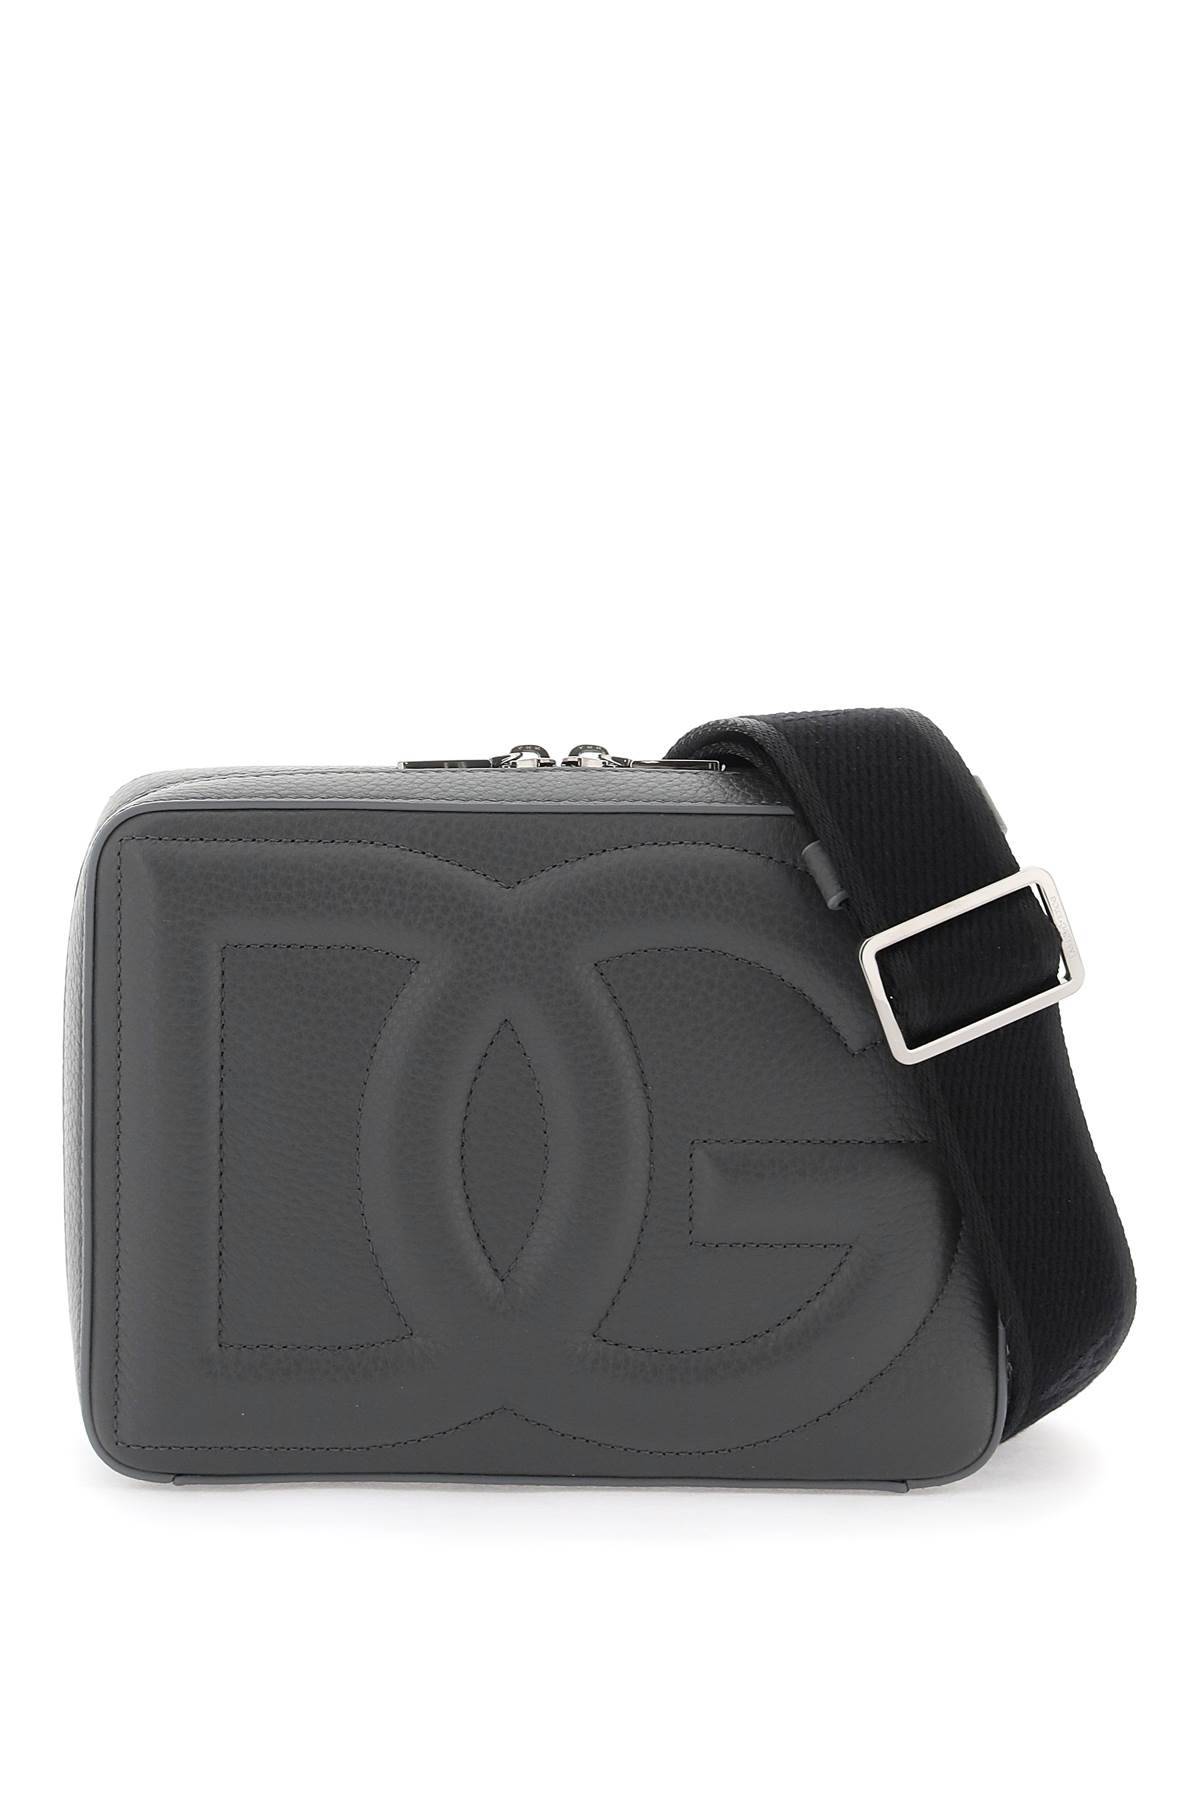 Dolce & Gabbana DOLCE & GABBANA dg logo camera bag for photography